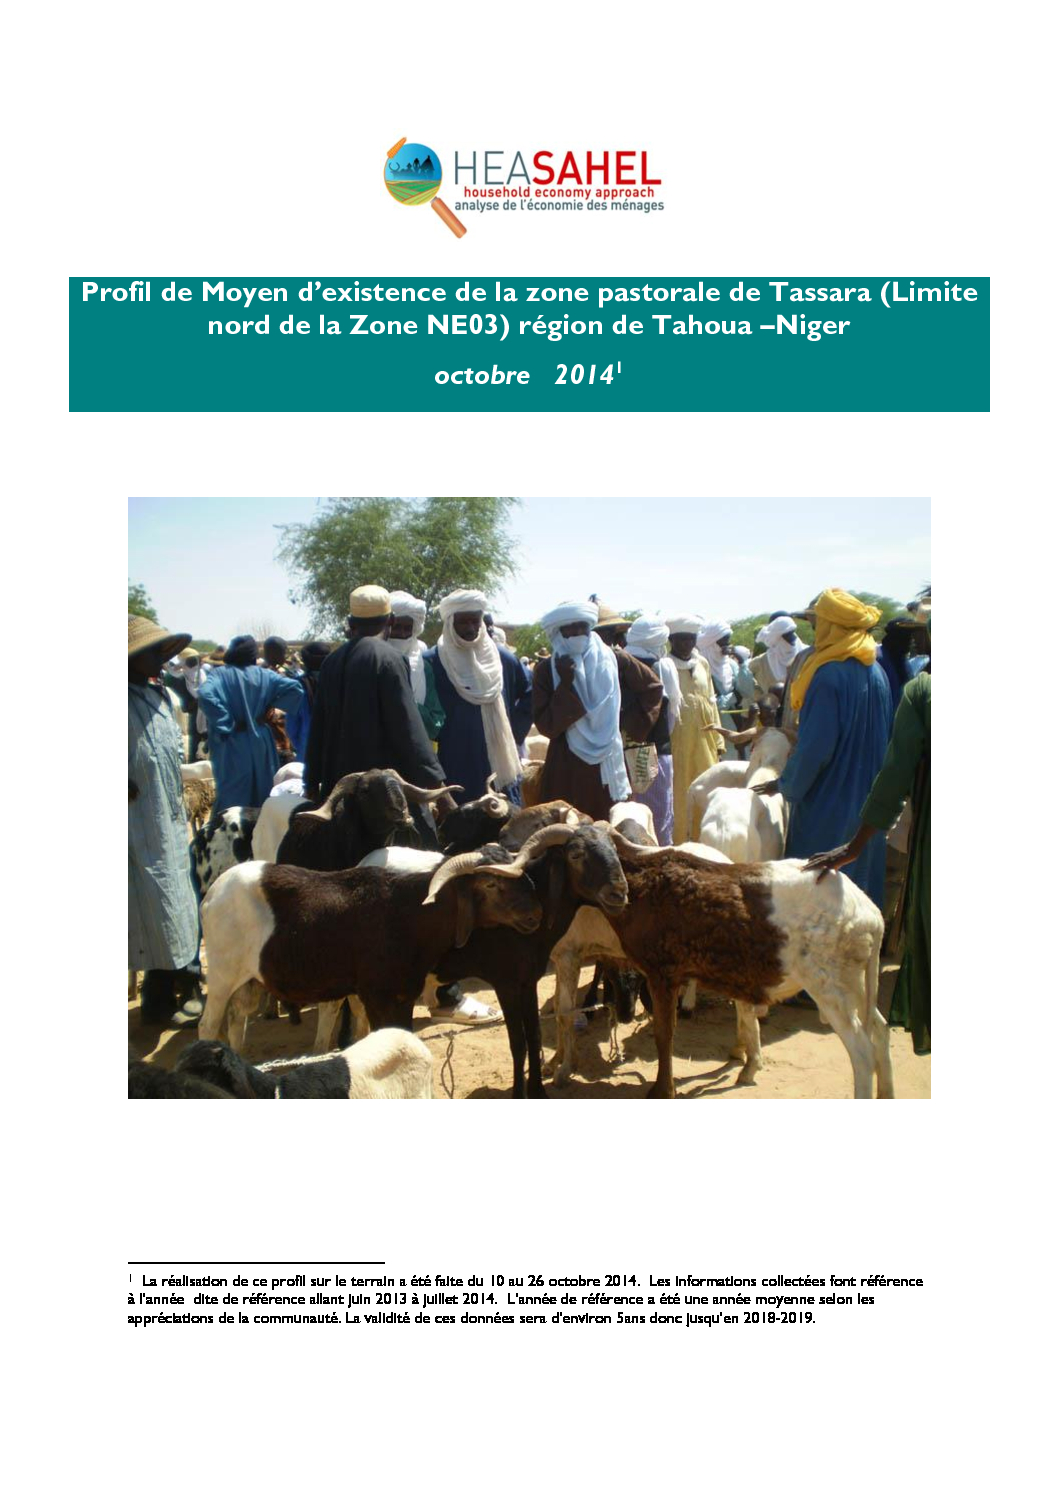 Profil Niger - NE 03 - Tassara - Octobre 2014